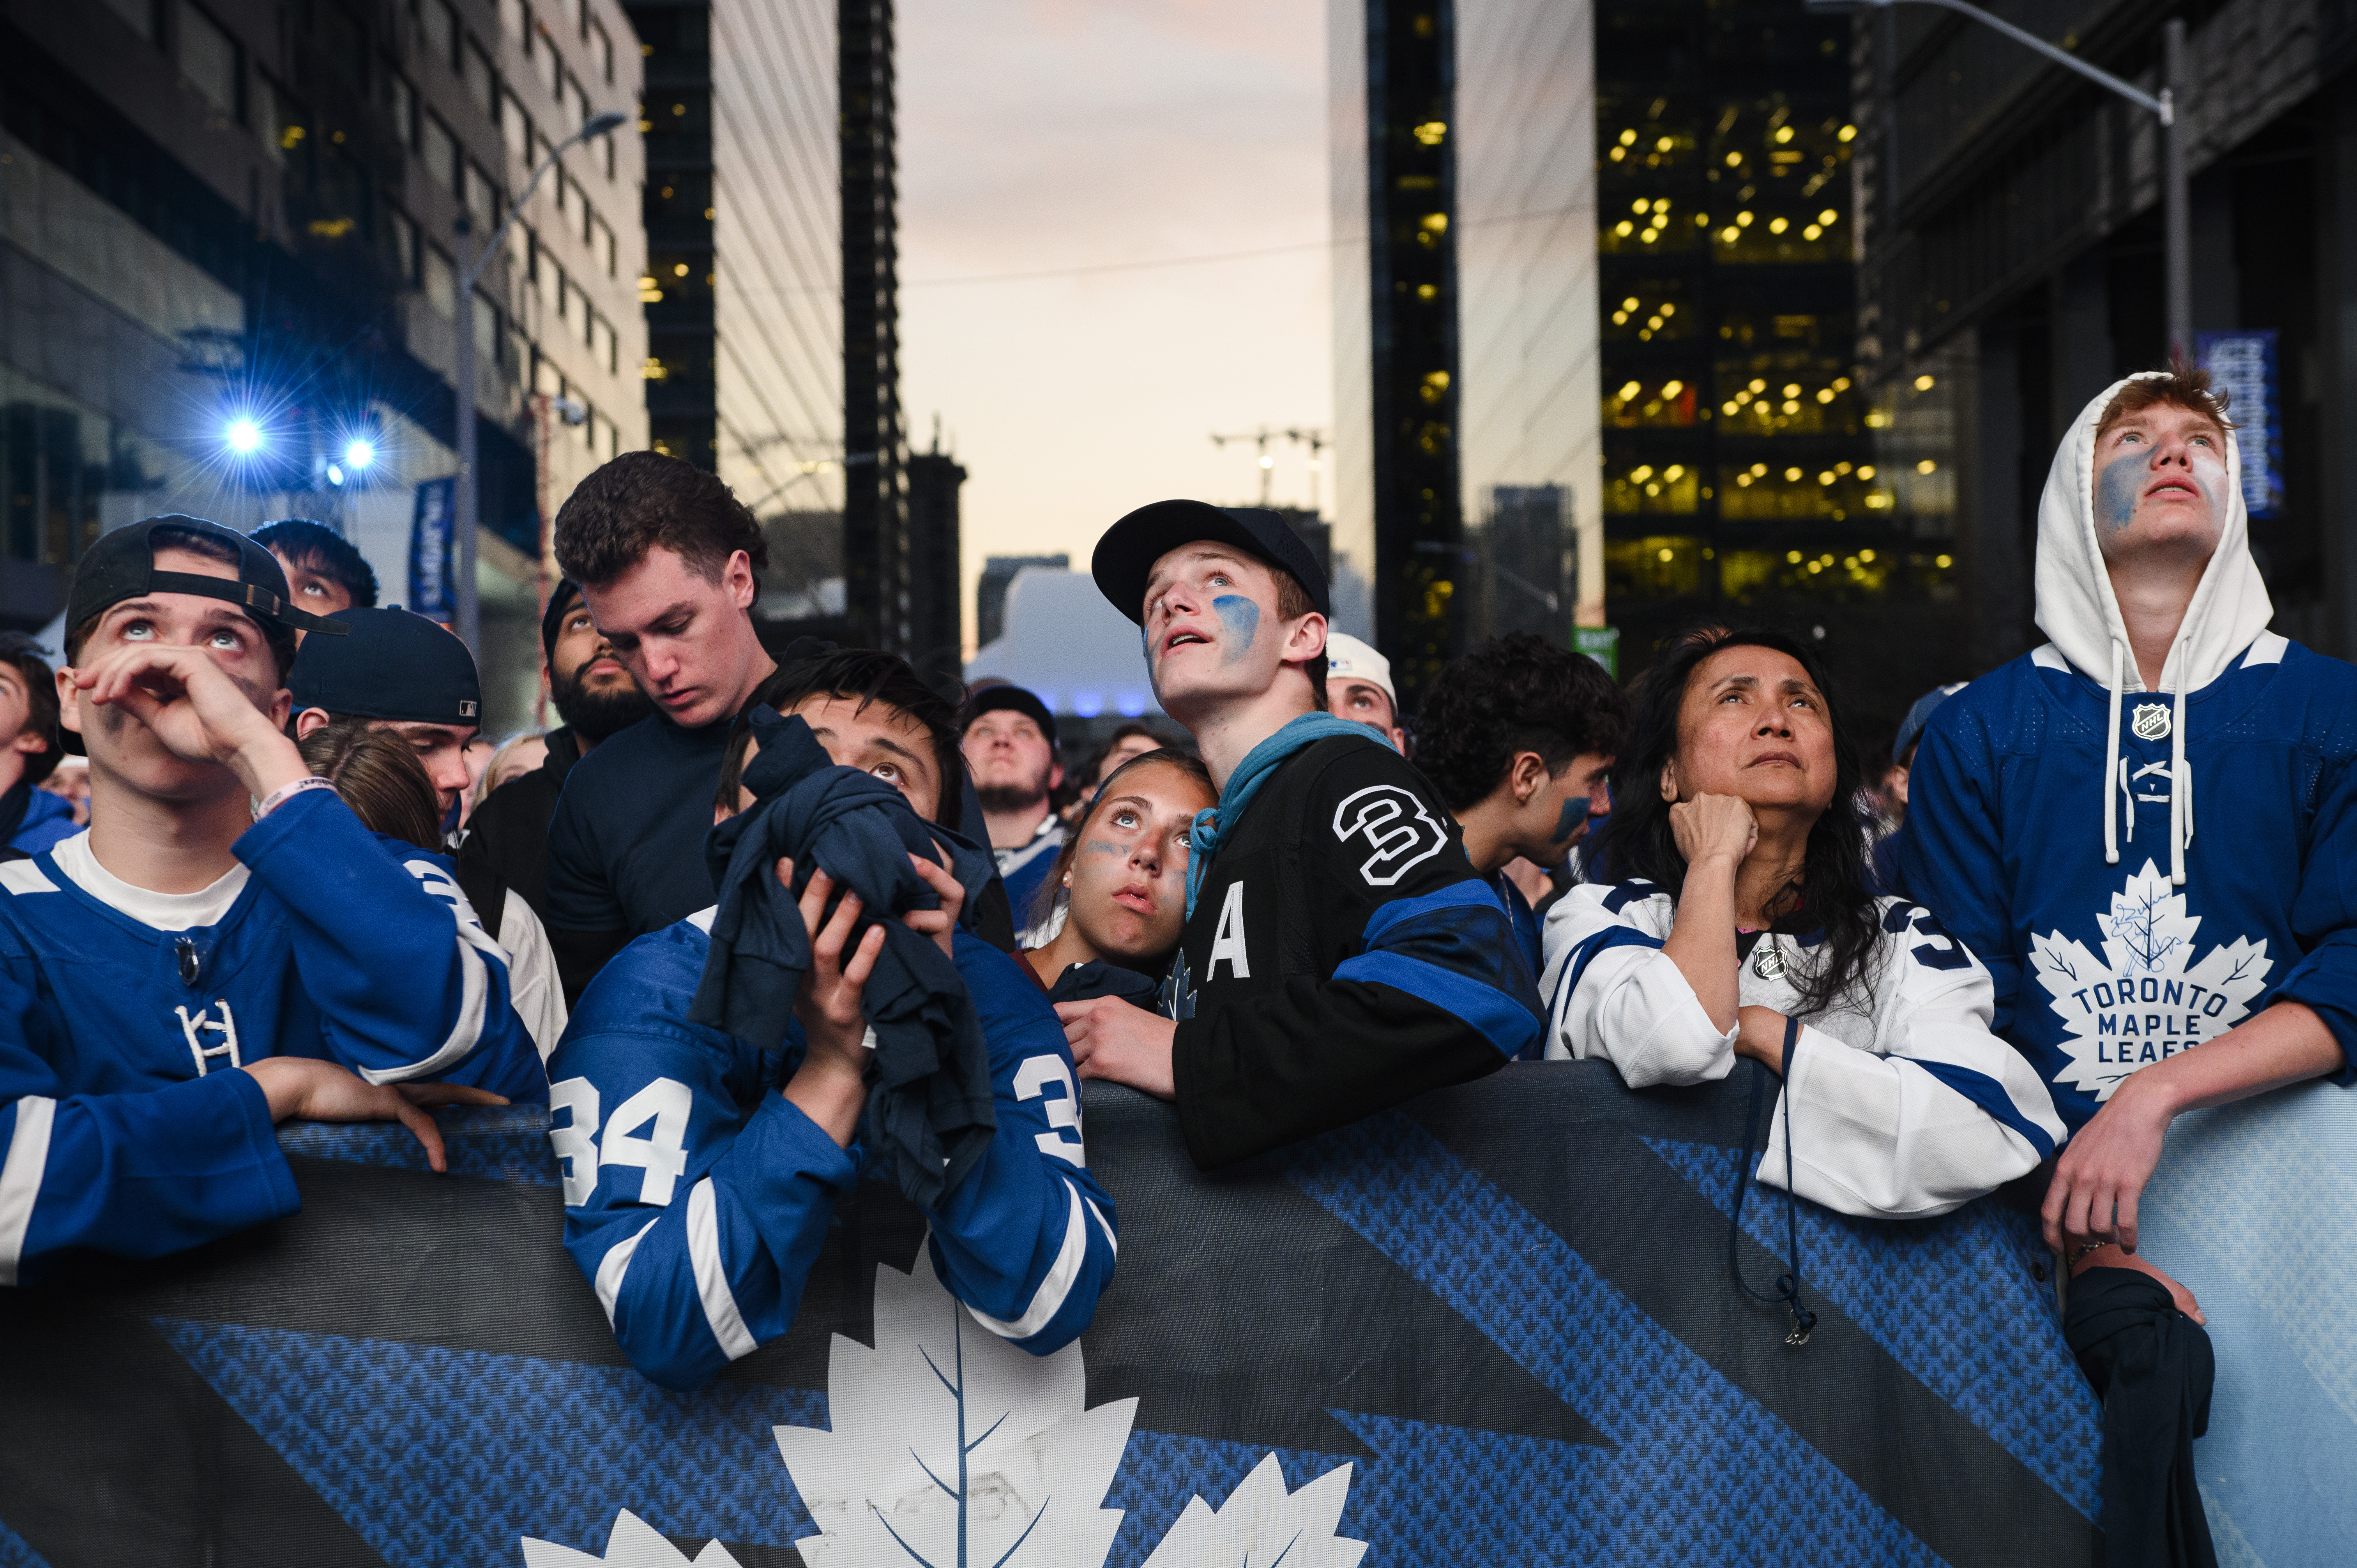 Size S Toronto Maple Leafs NHL Fan Jackets for sale